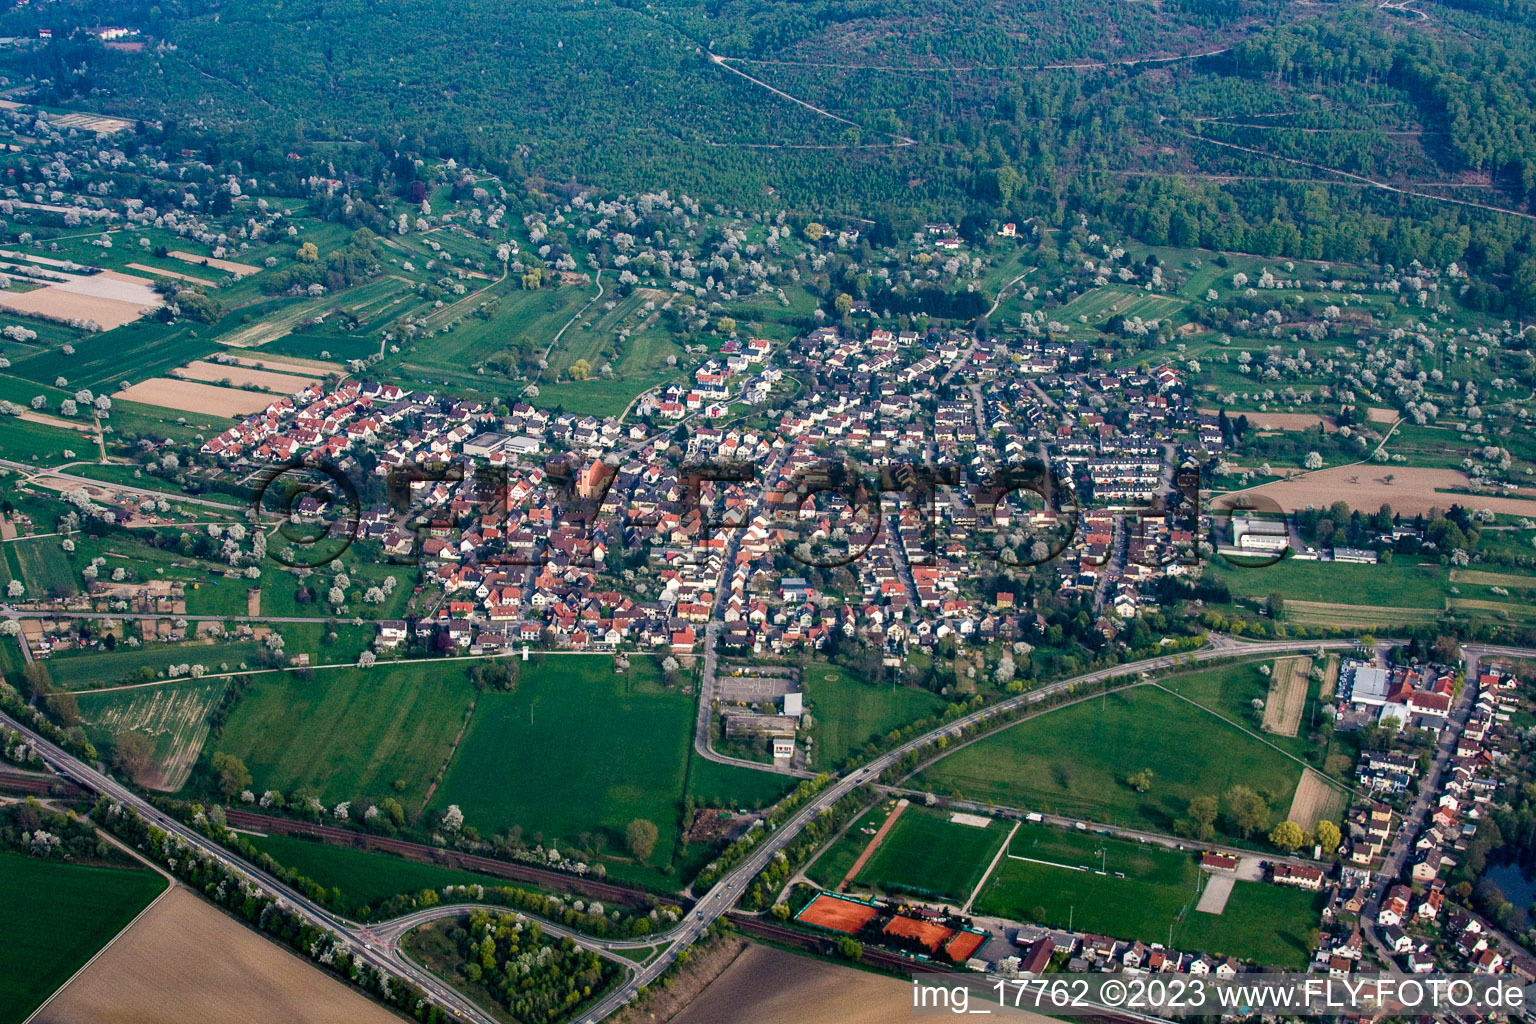 Ortsteil Oberweier in Ettlingen im Bundesland Baden-Württemberg, Deutschland aus der Drohnenperspektive